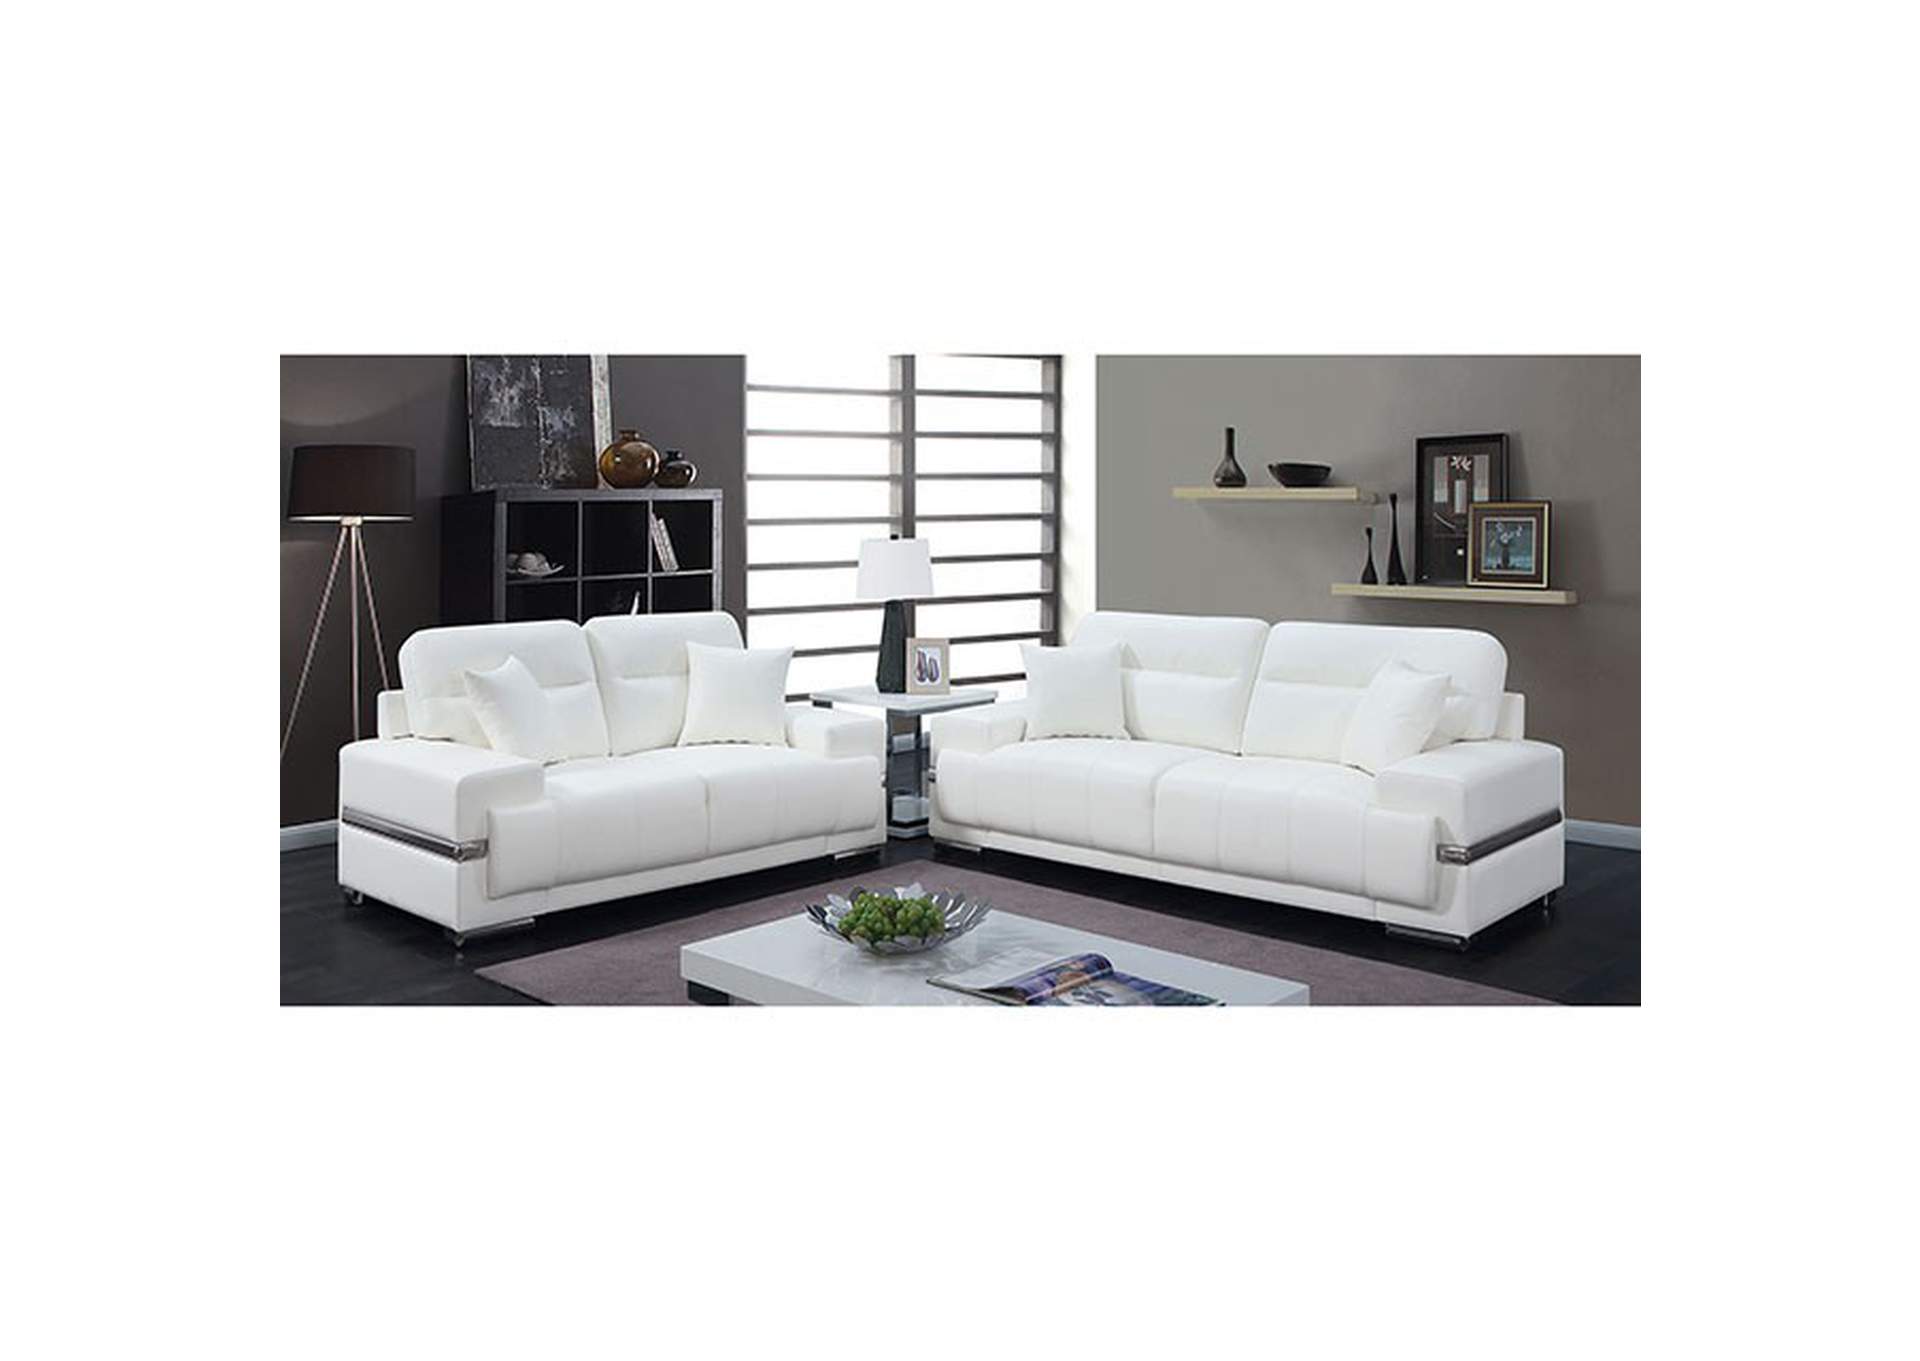 Zibak Sofa,Furniture of America